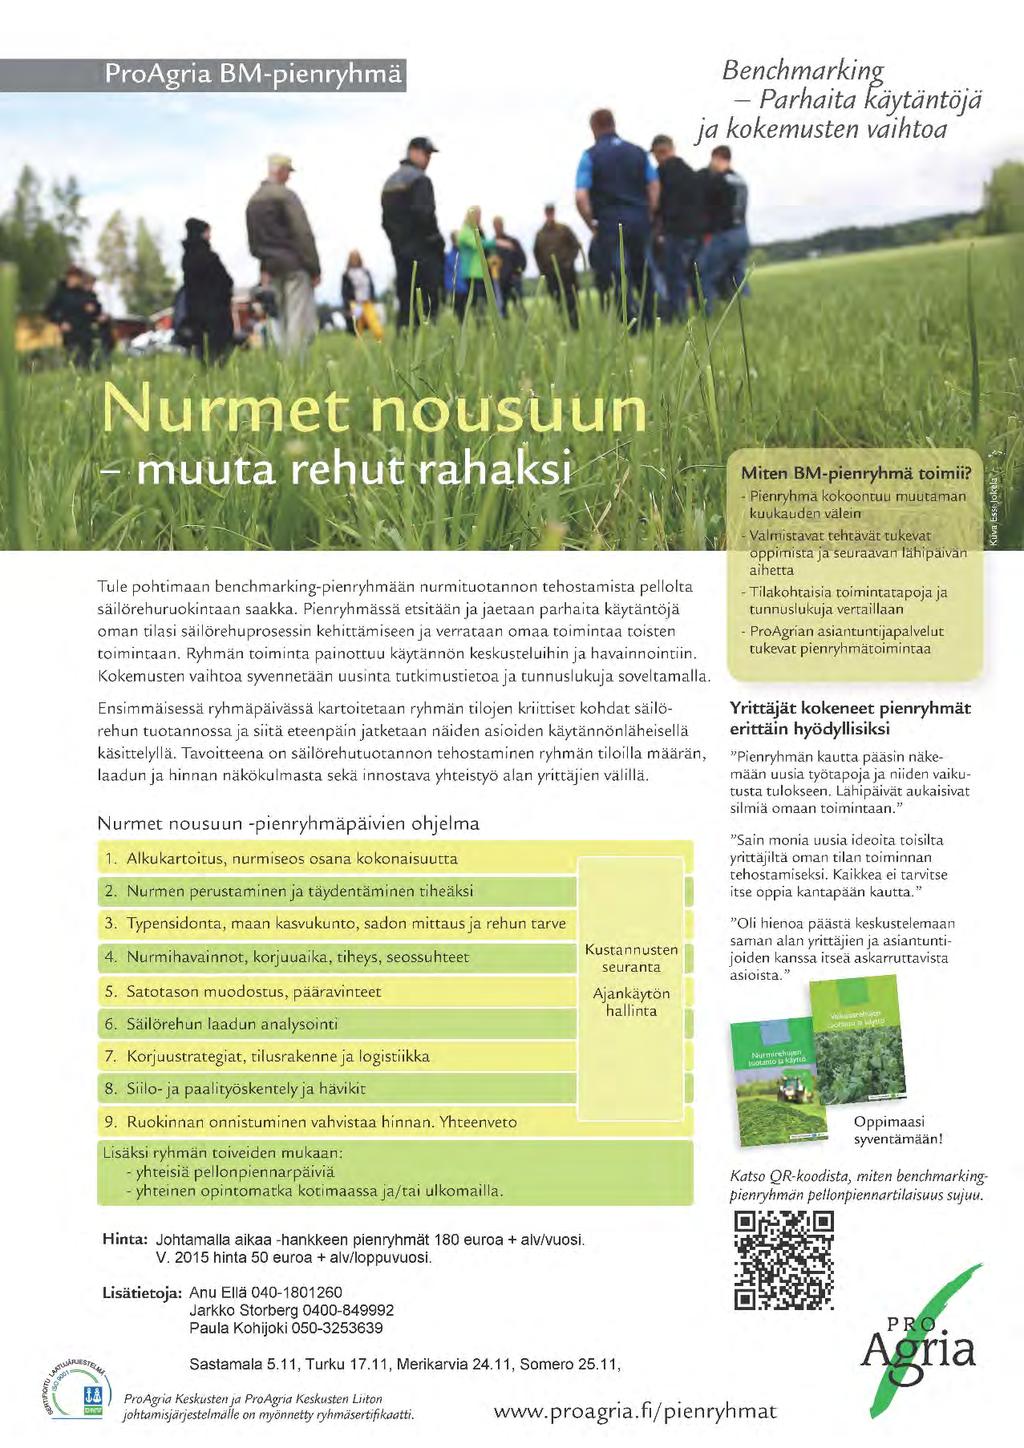 - Suomessa toimii tällä hetkellä 20 ProAgrian viljelijänurmiryhmää ympäri Suomen.